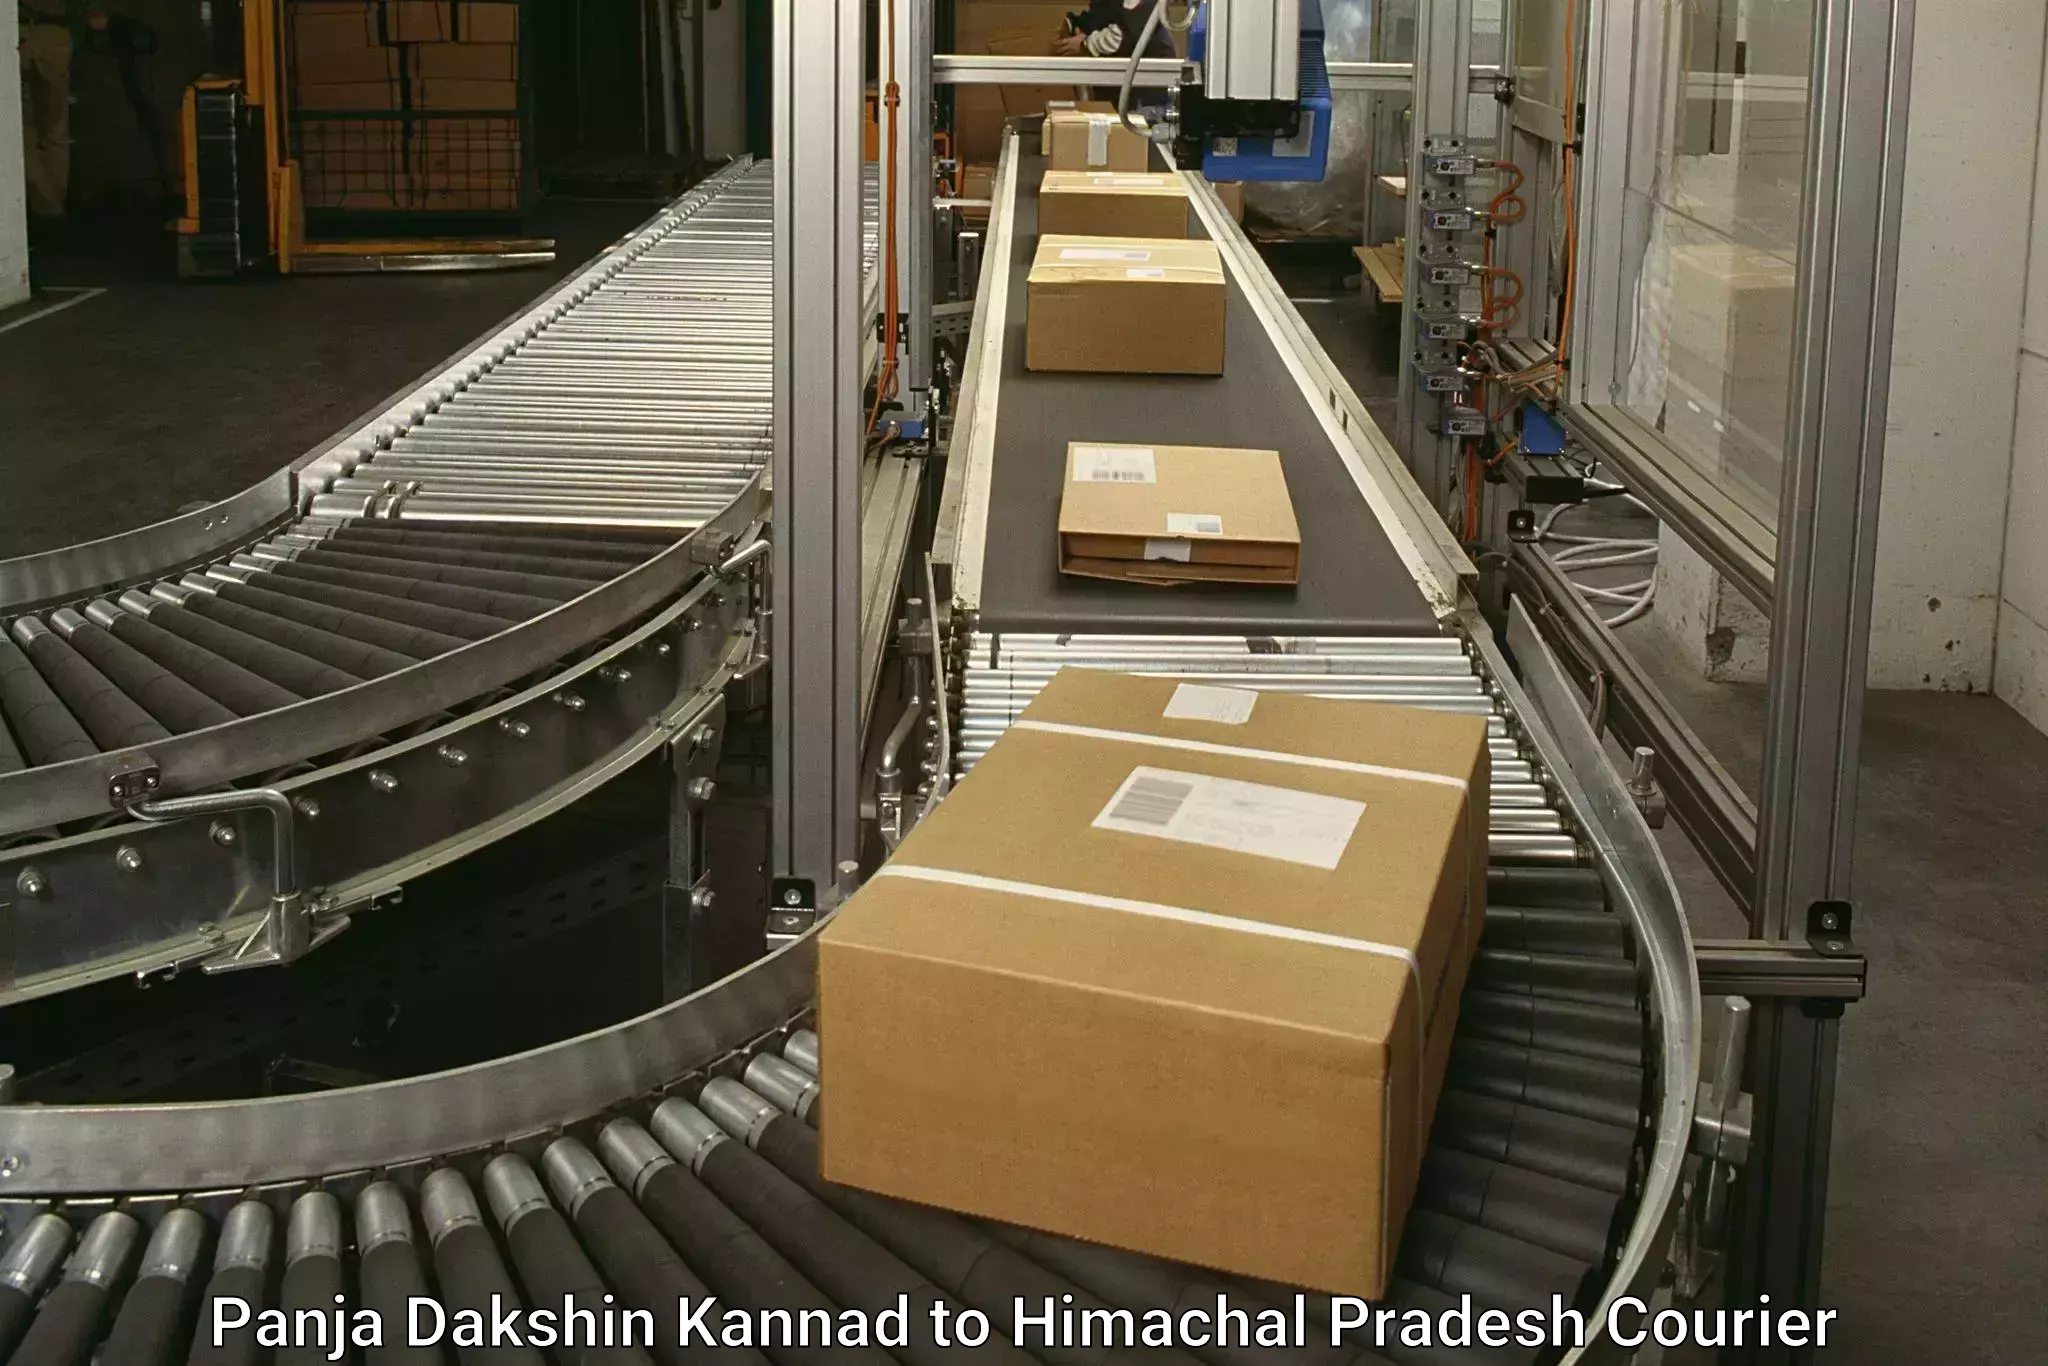 High-capacity parcel service Panja Dakshin Kannad to Himachal Pradesh